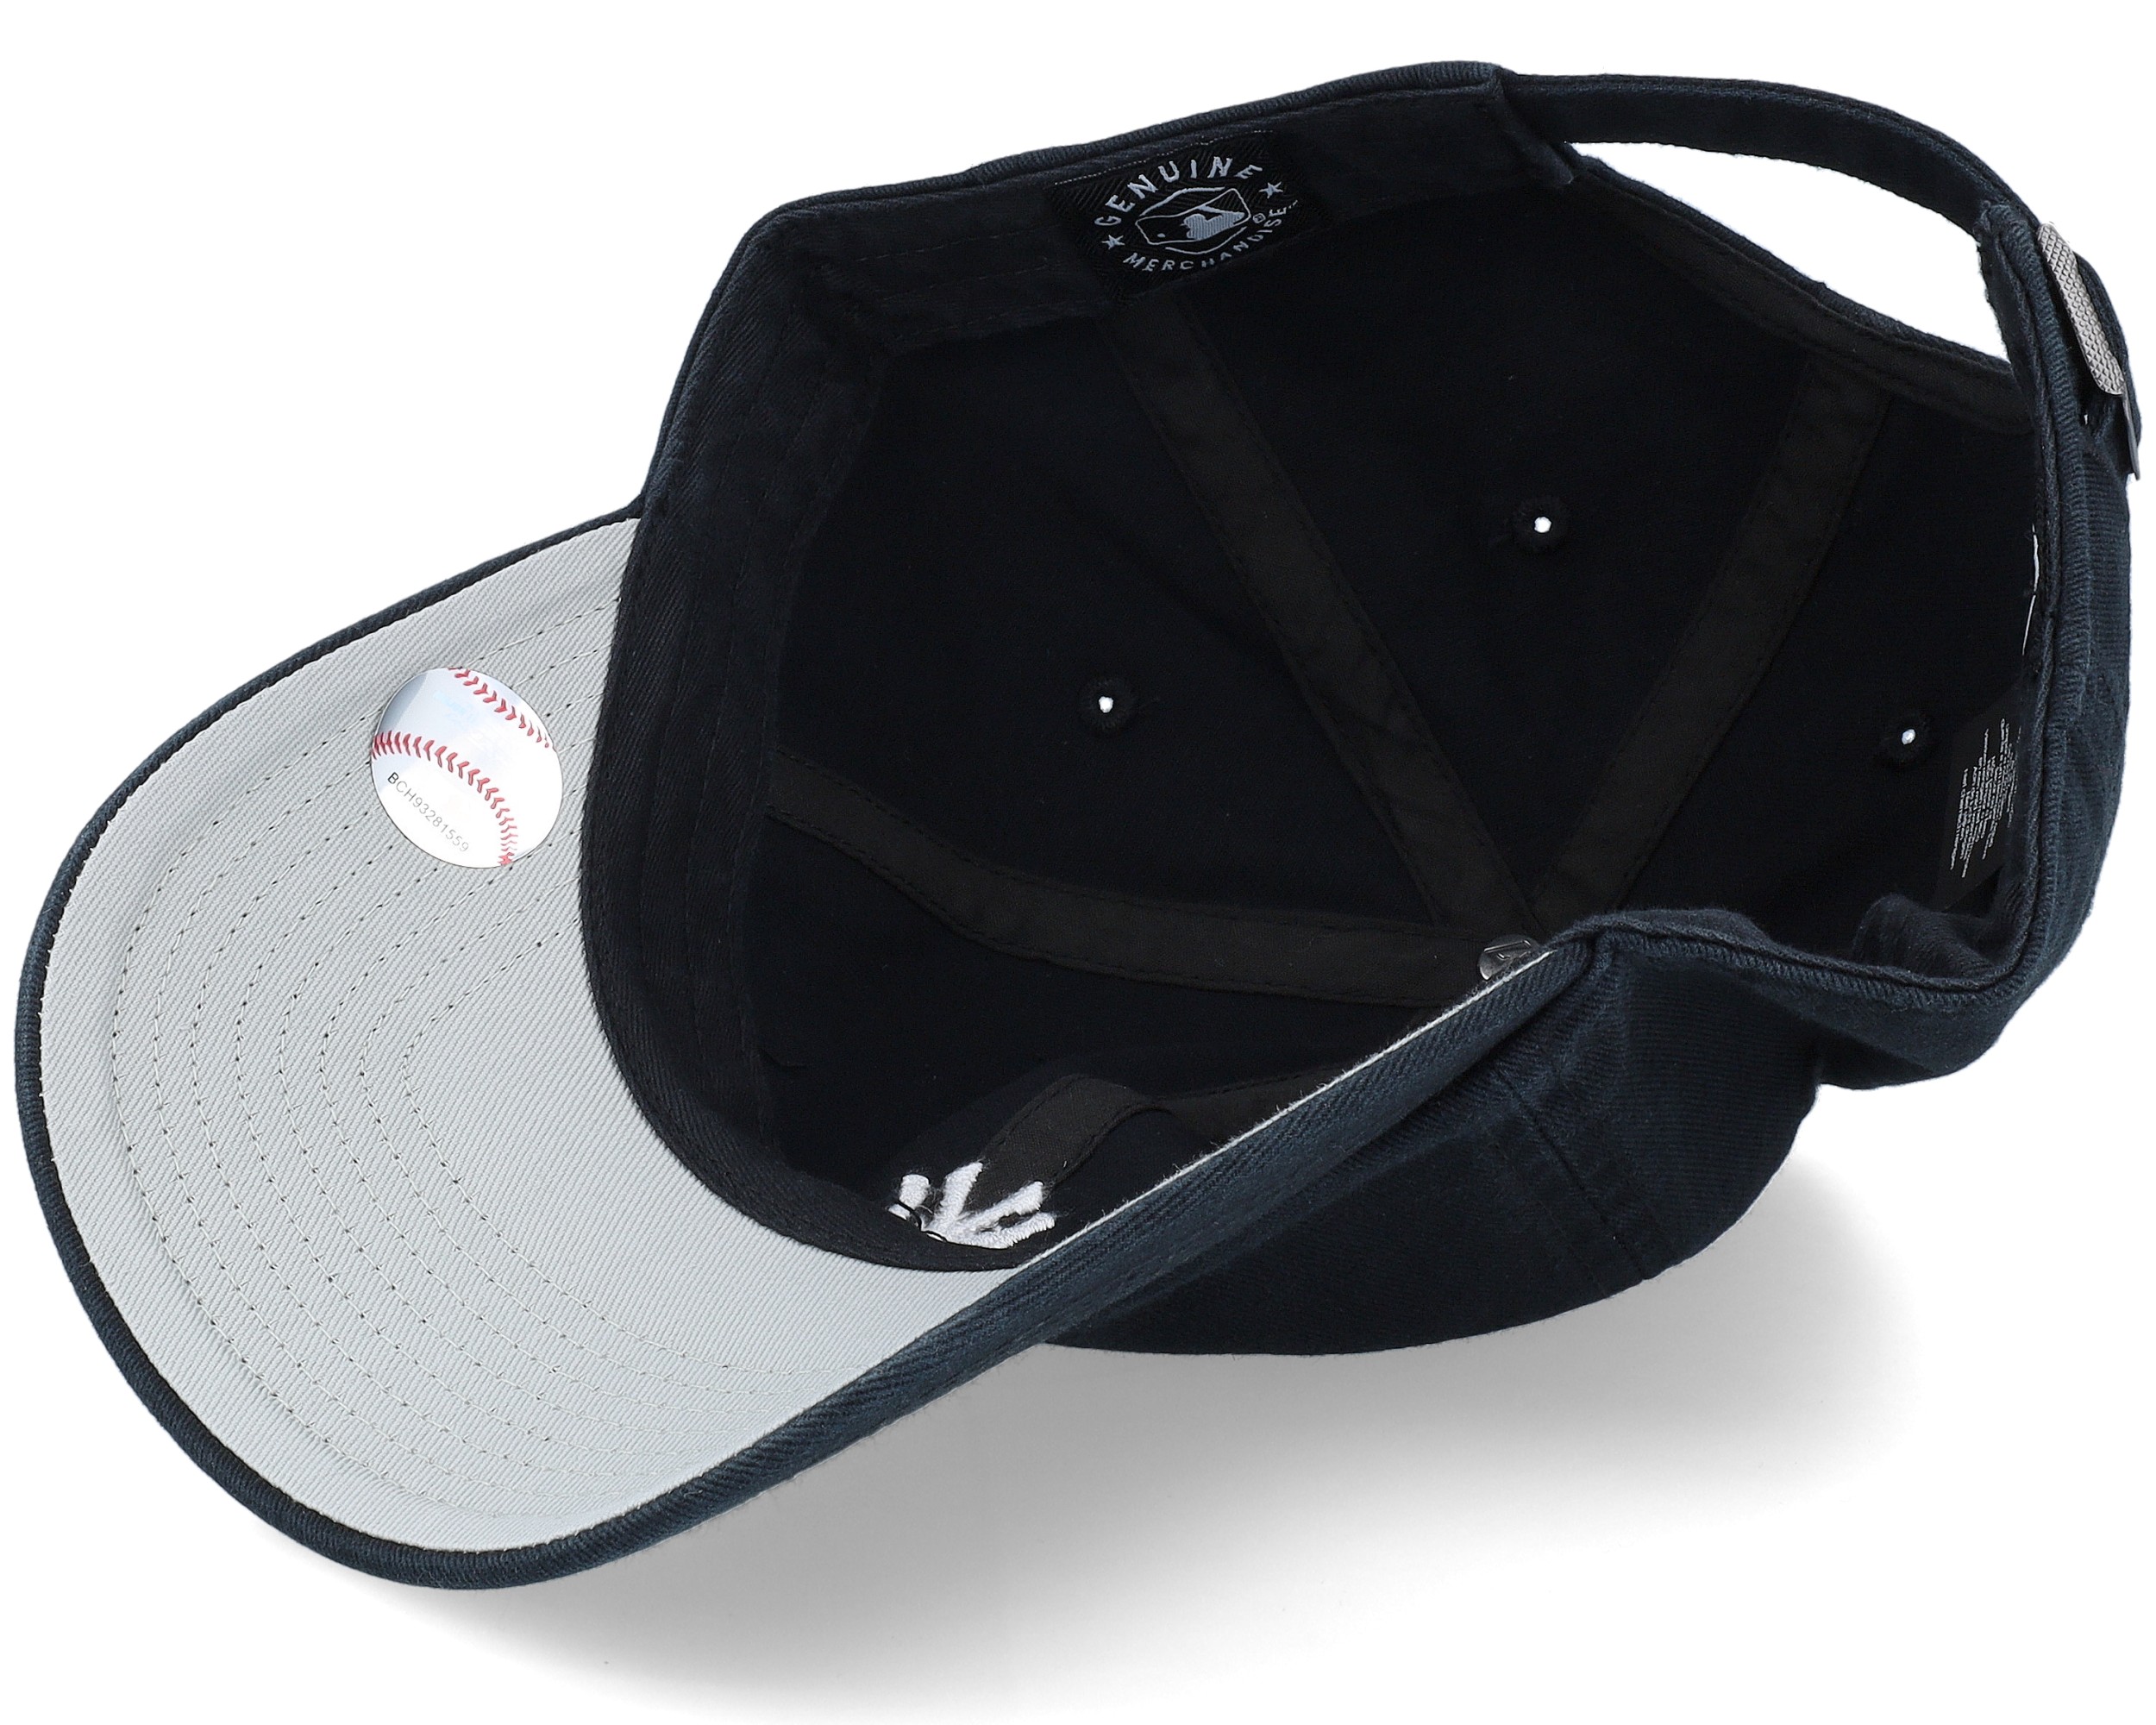 New York Yankees Base Runner Clean Up Black/White Adjustable - 47 Brand caps - Hatstoreworld.com